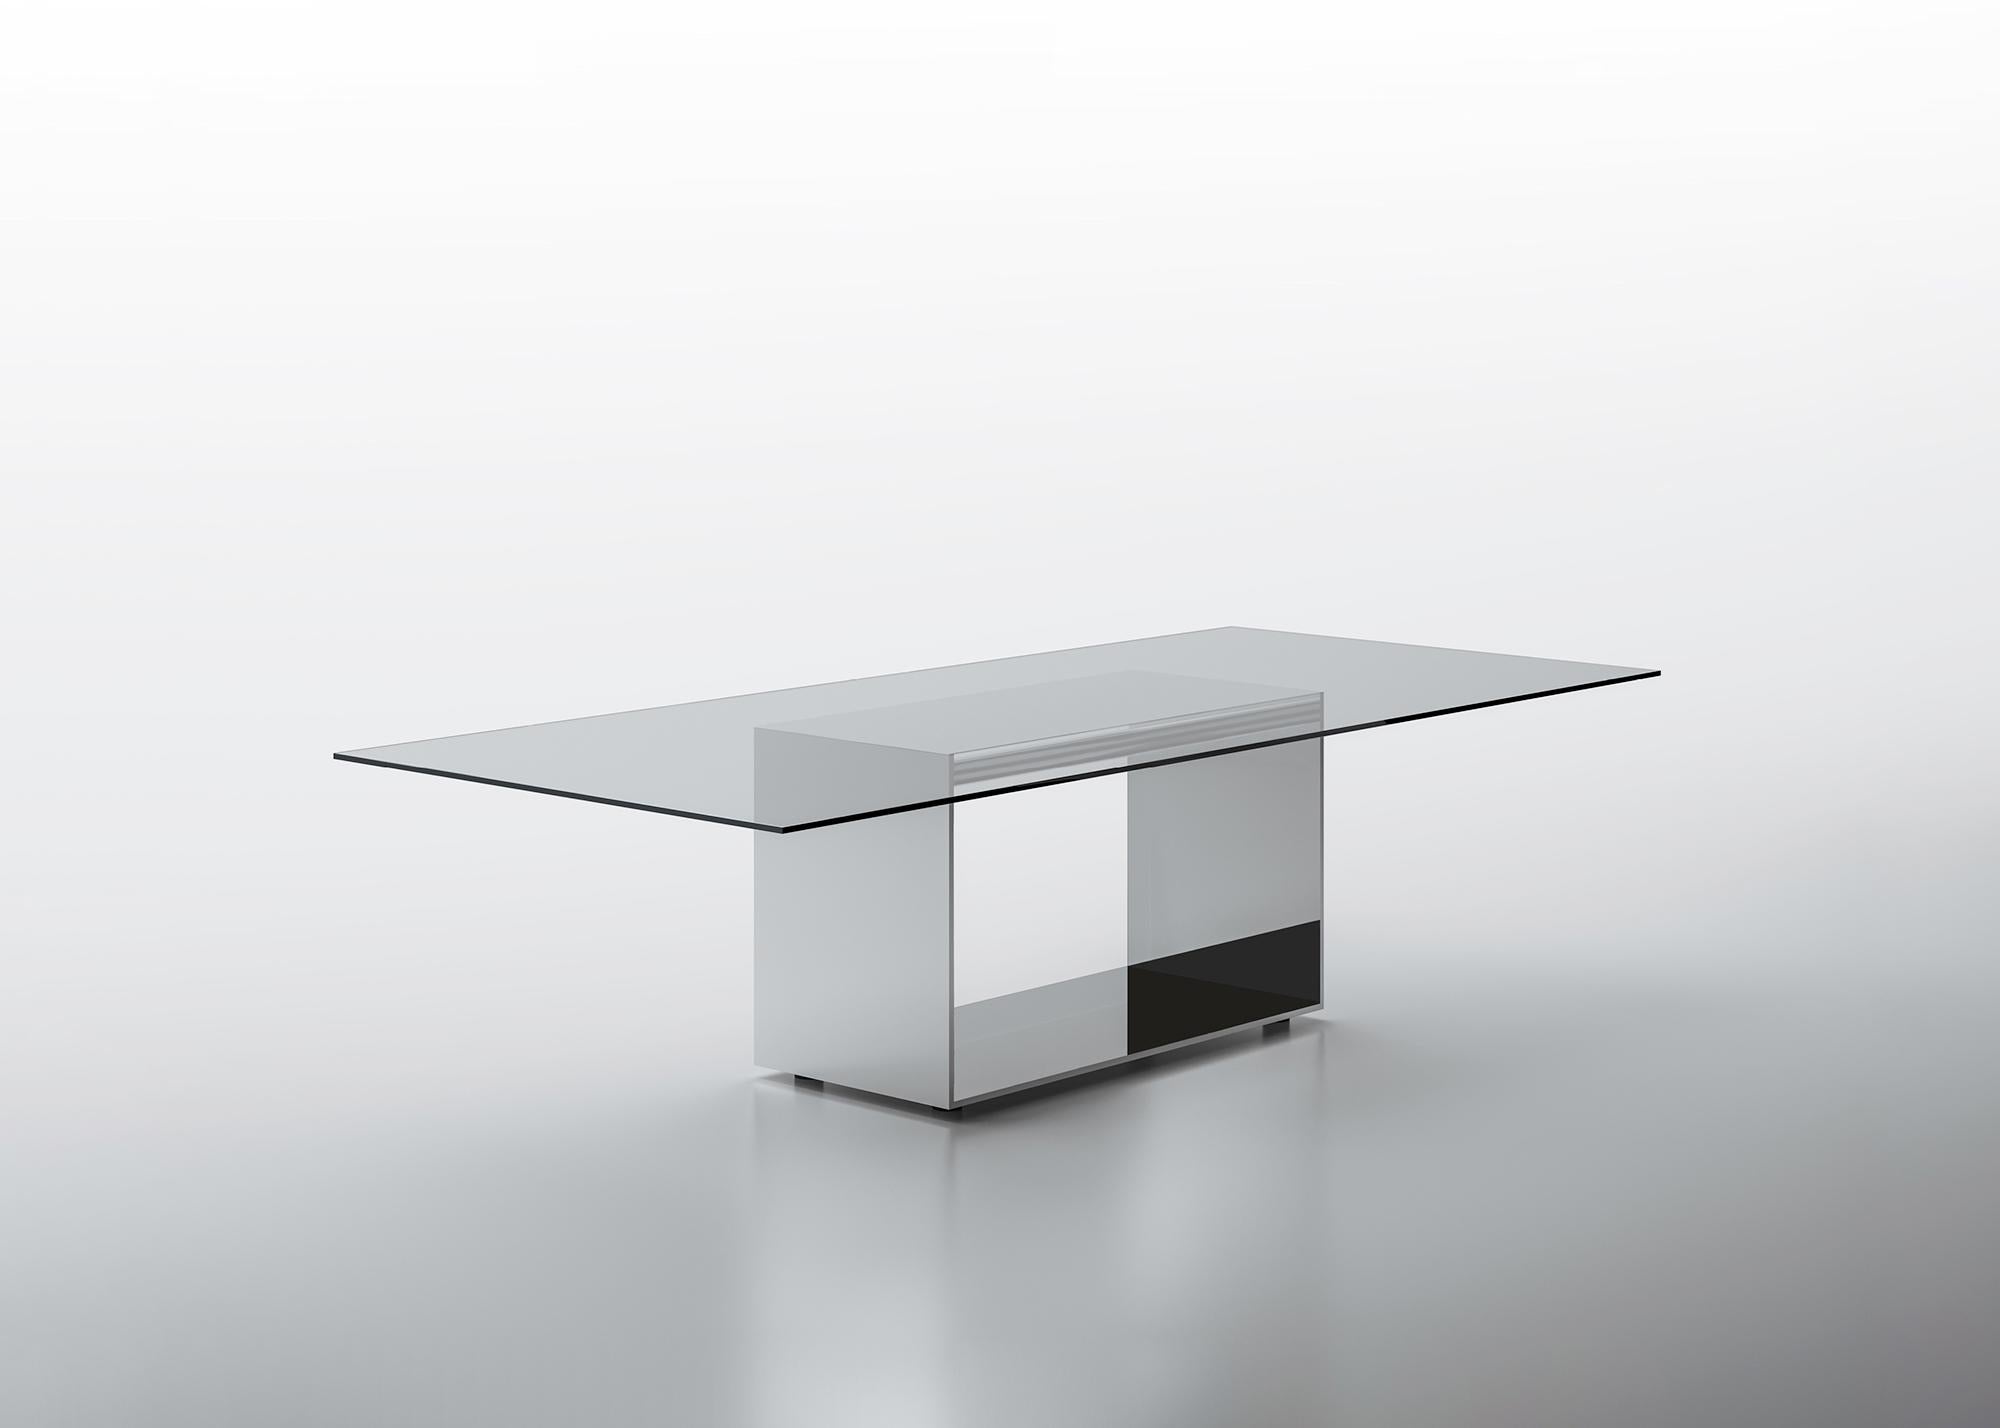 Judd ist ein Tischsystem, das eine essentielle Linie mit reichhaltigen Materialien verbindet. Eine innovative Strukturplatte bildet die Basis des Tisches. Das Äußere ist aus hochglanzpoliertem Edelstahl, das Innere ist mit Spiegel, Bleispiegel oder